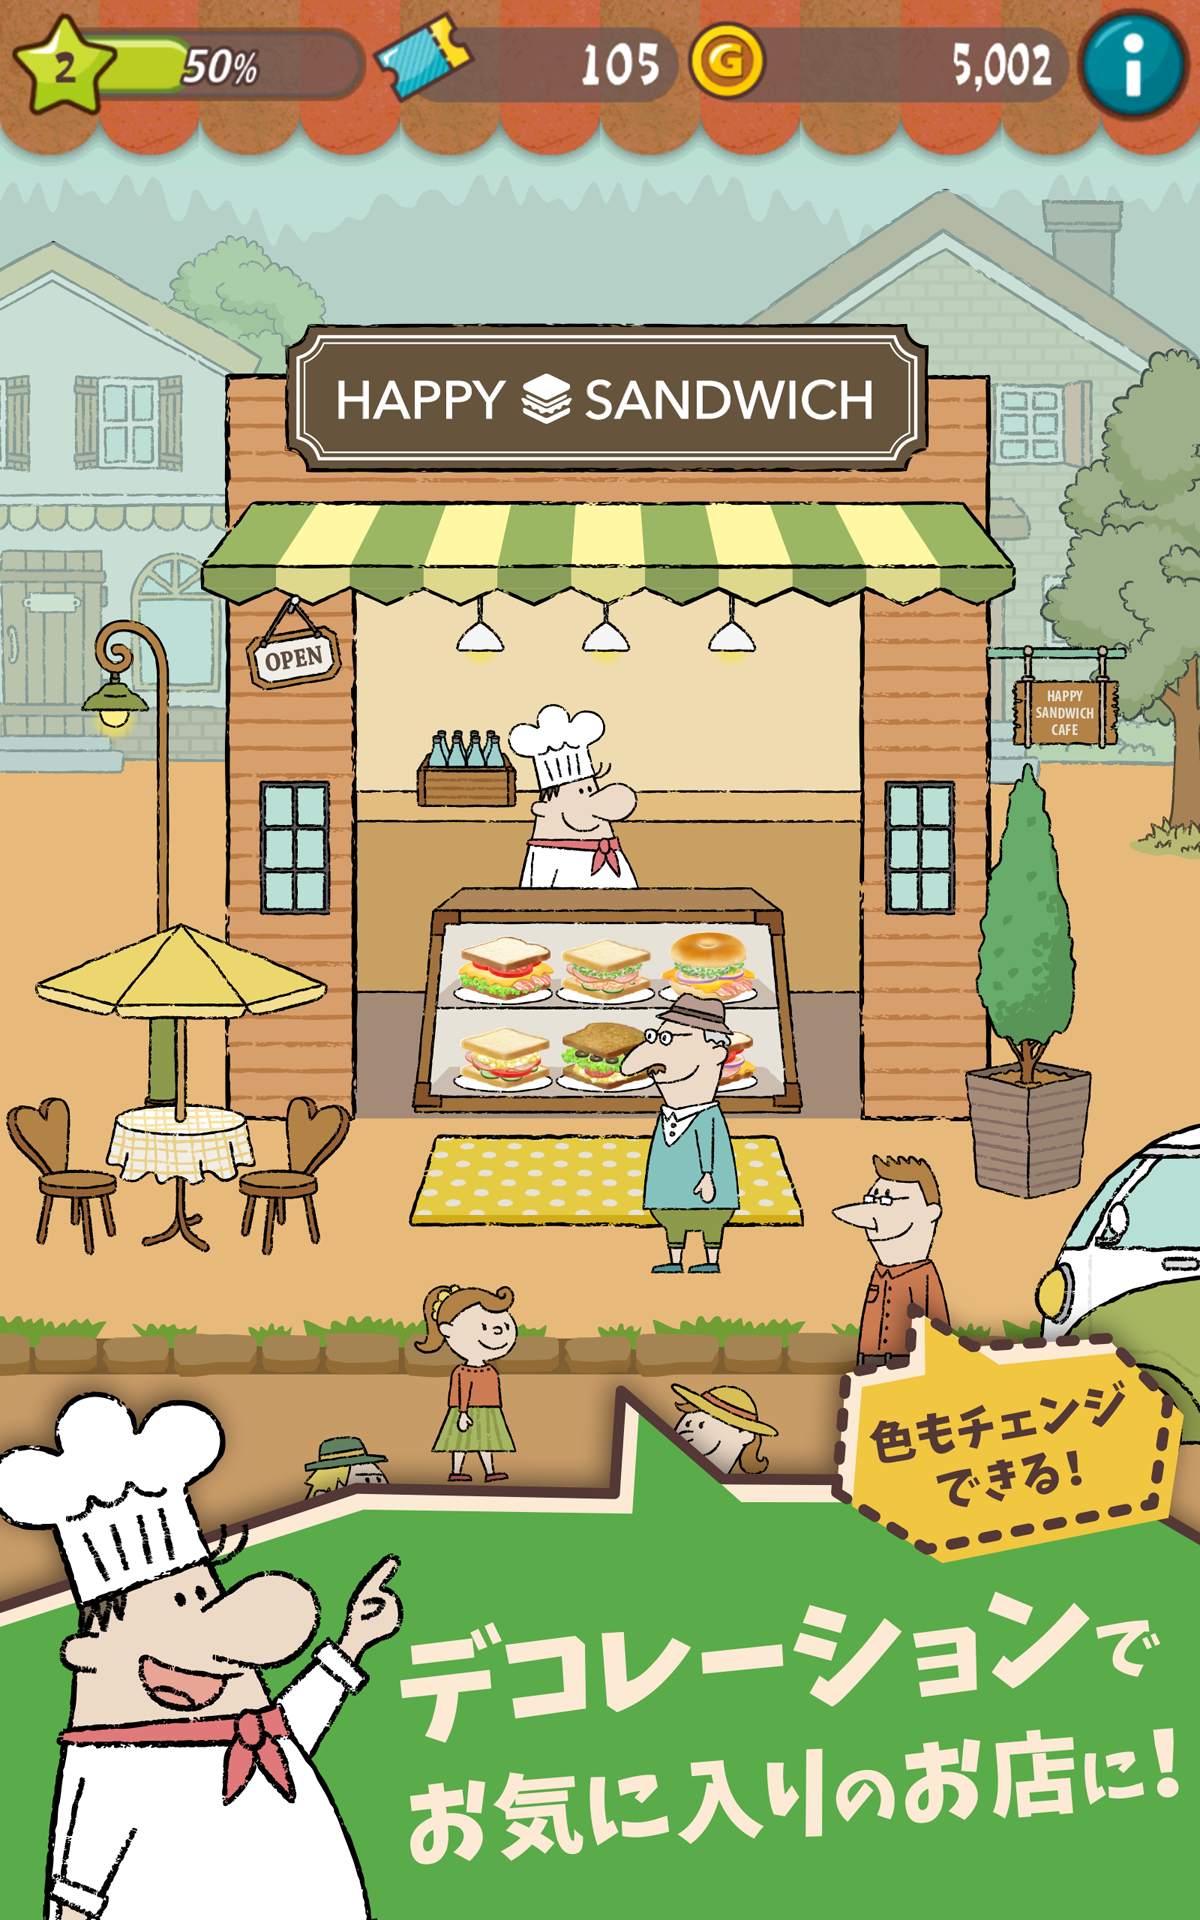 サンドイッチ屋経営 Happy Sandwich Cafeのキャプチャ